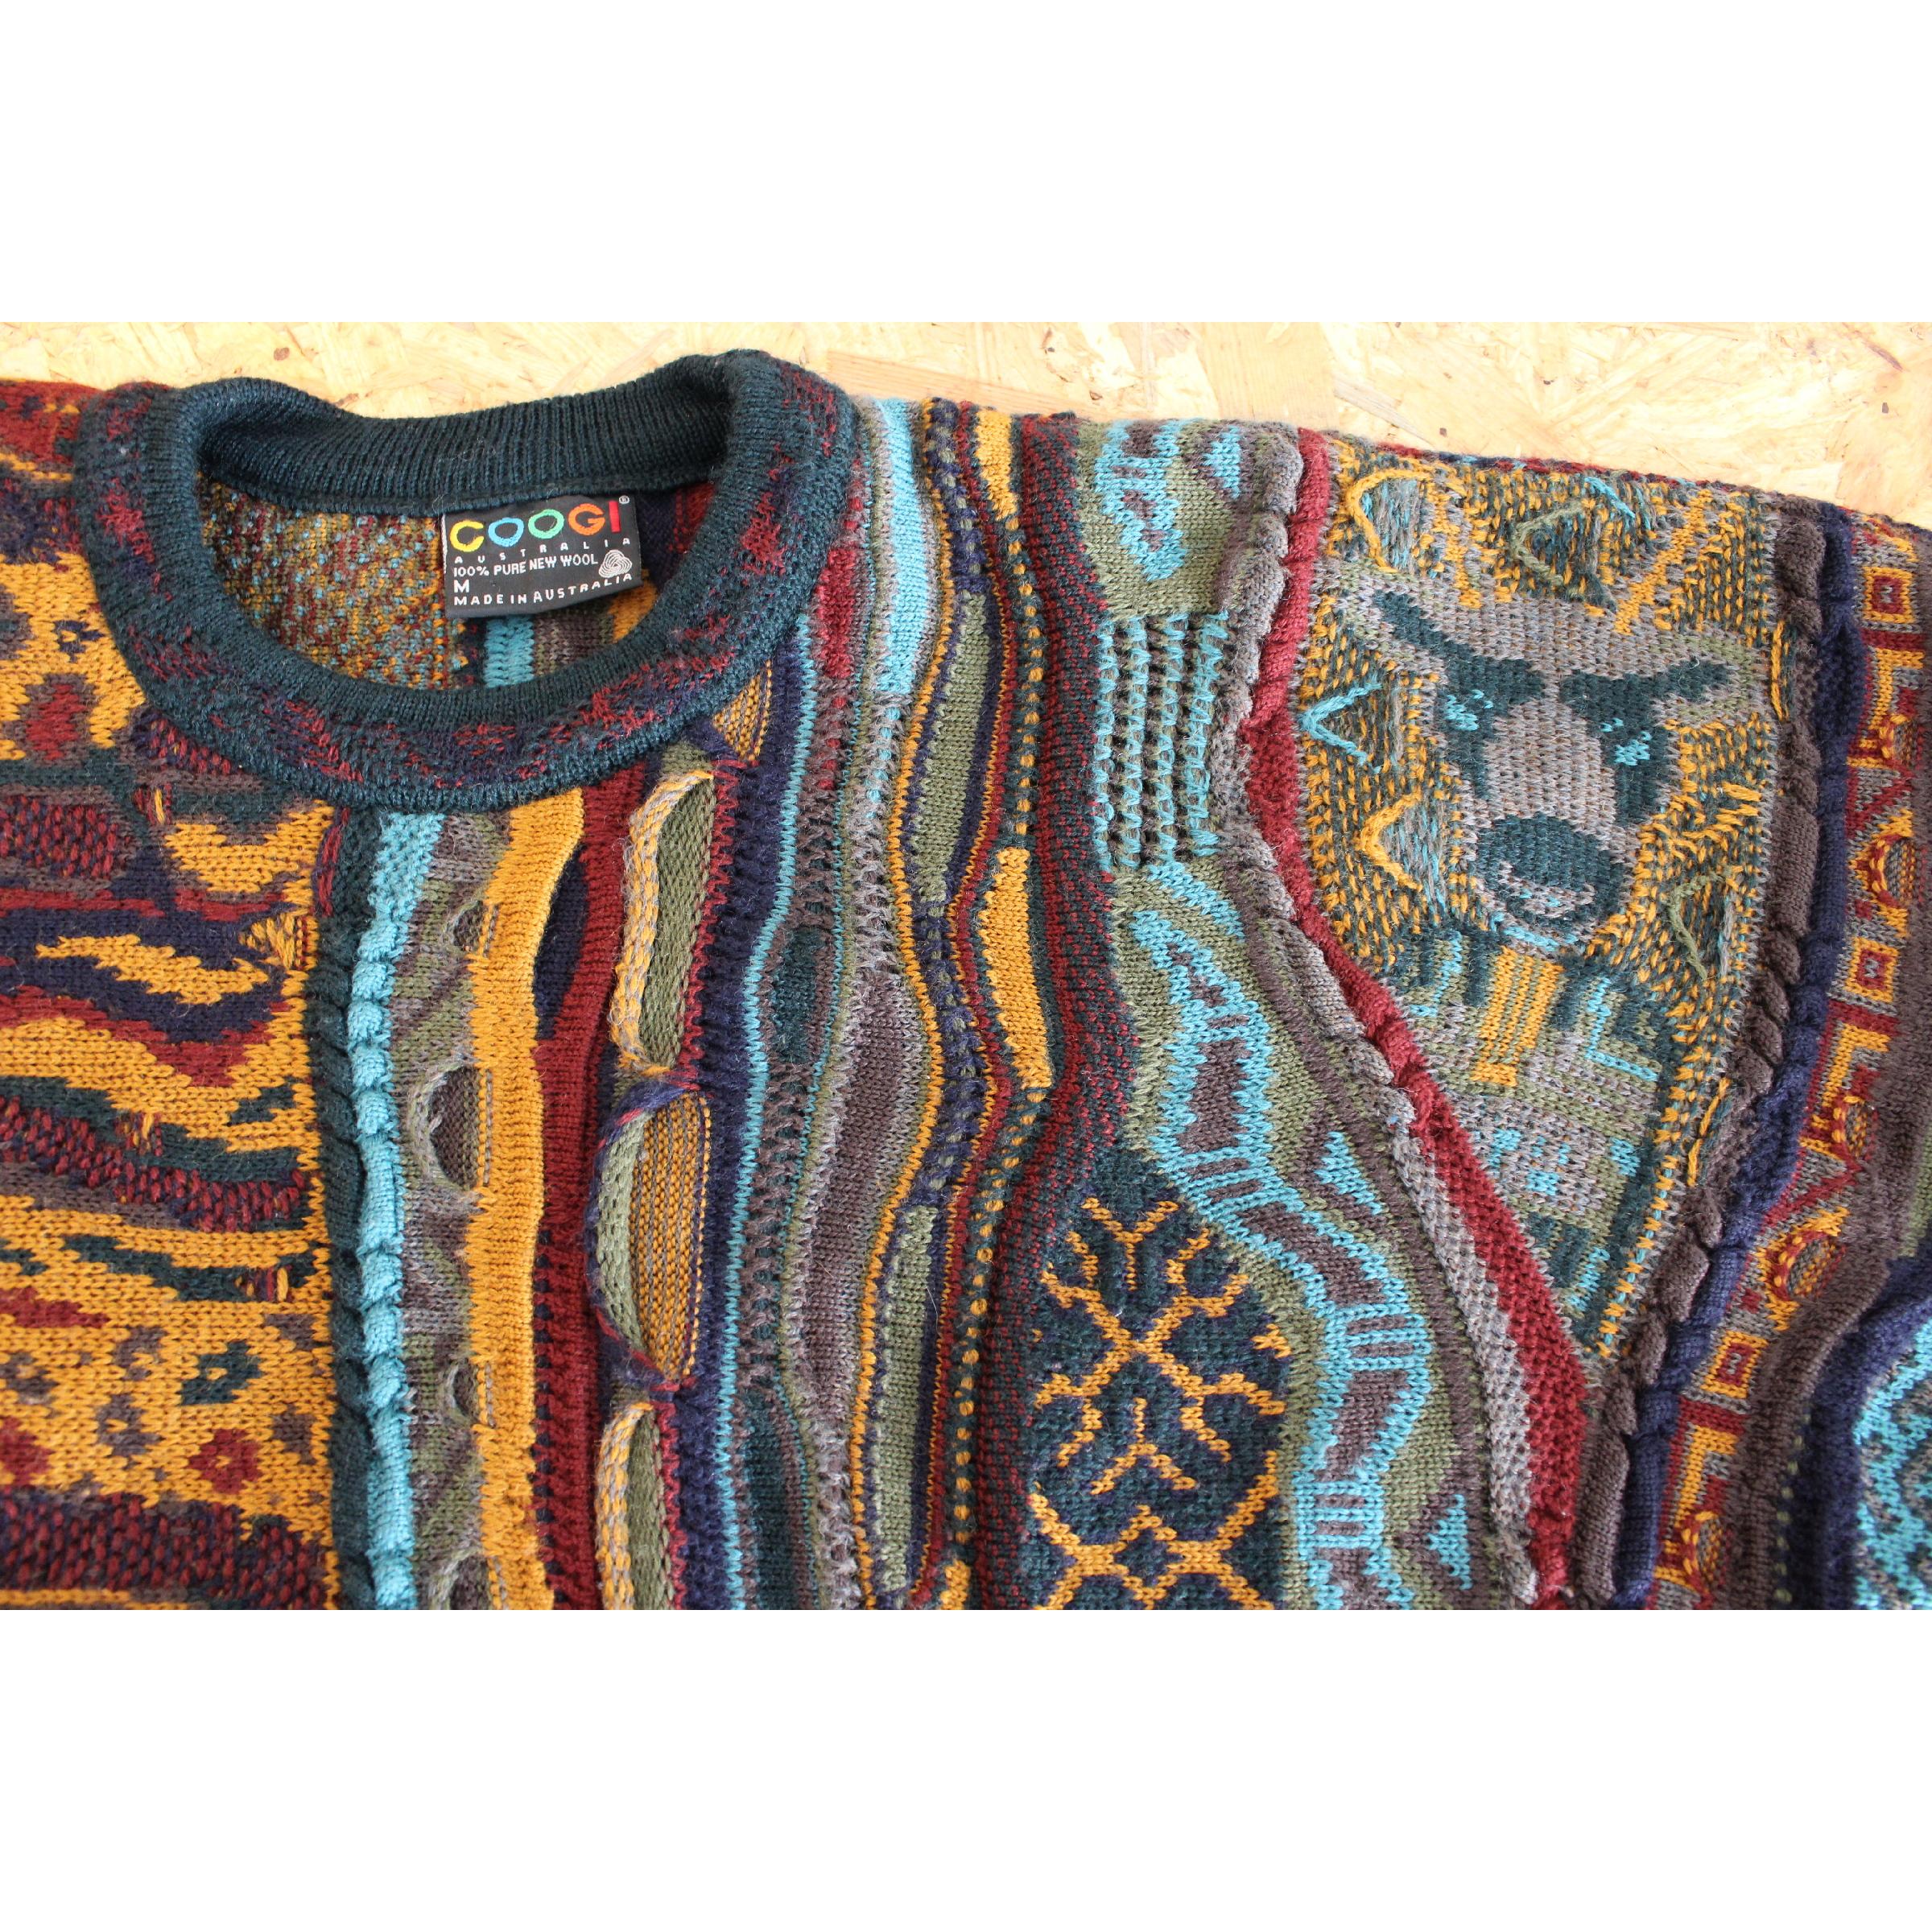 1980s Coogi Australia Multicolor Animalier Wool Vintage Sweater 1